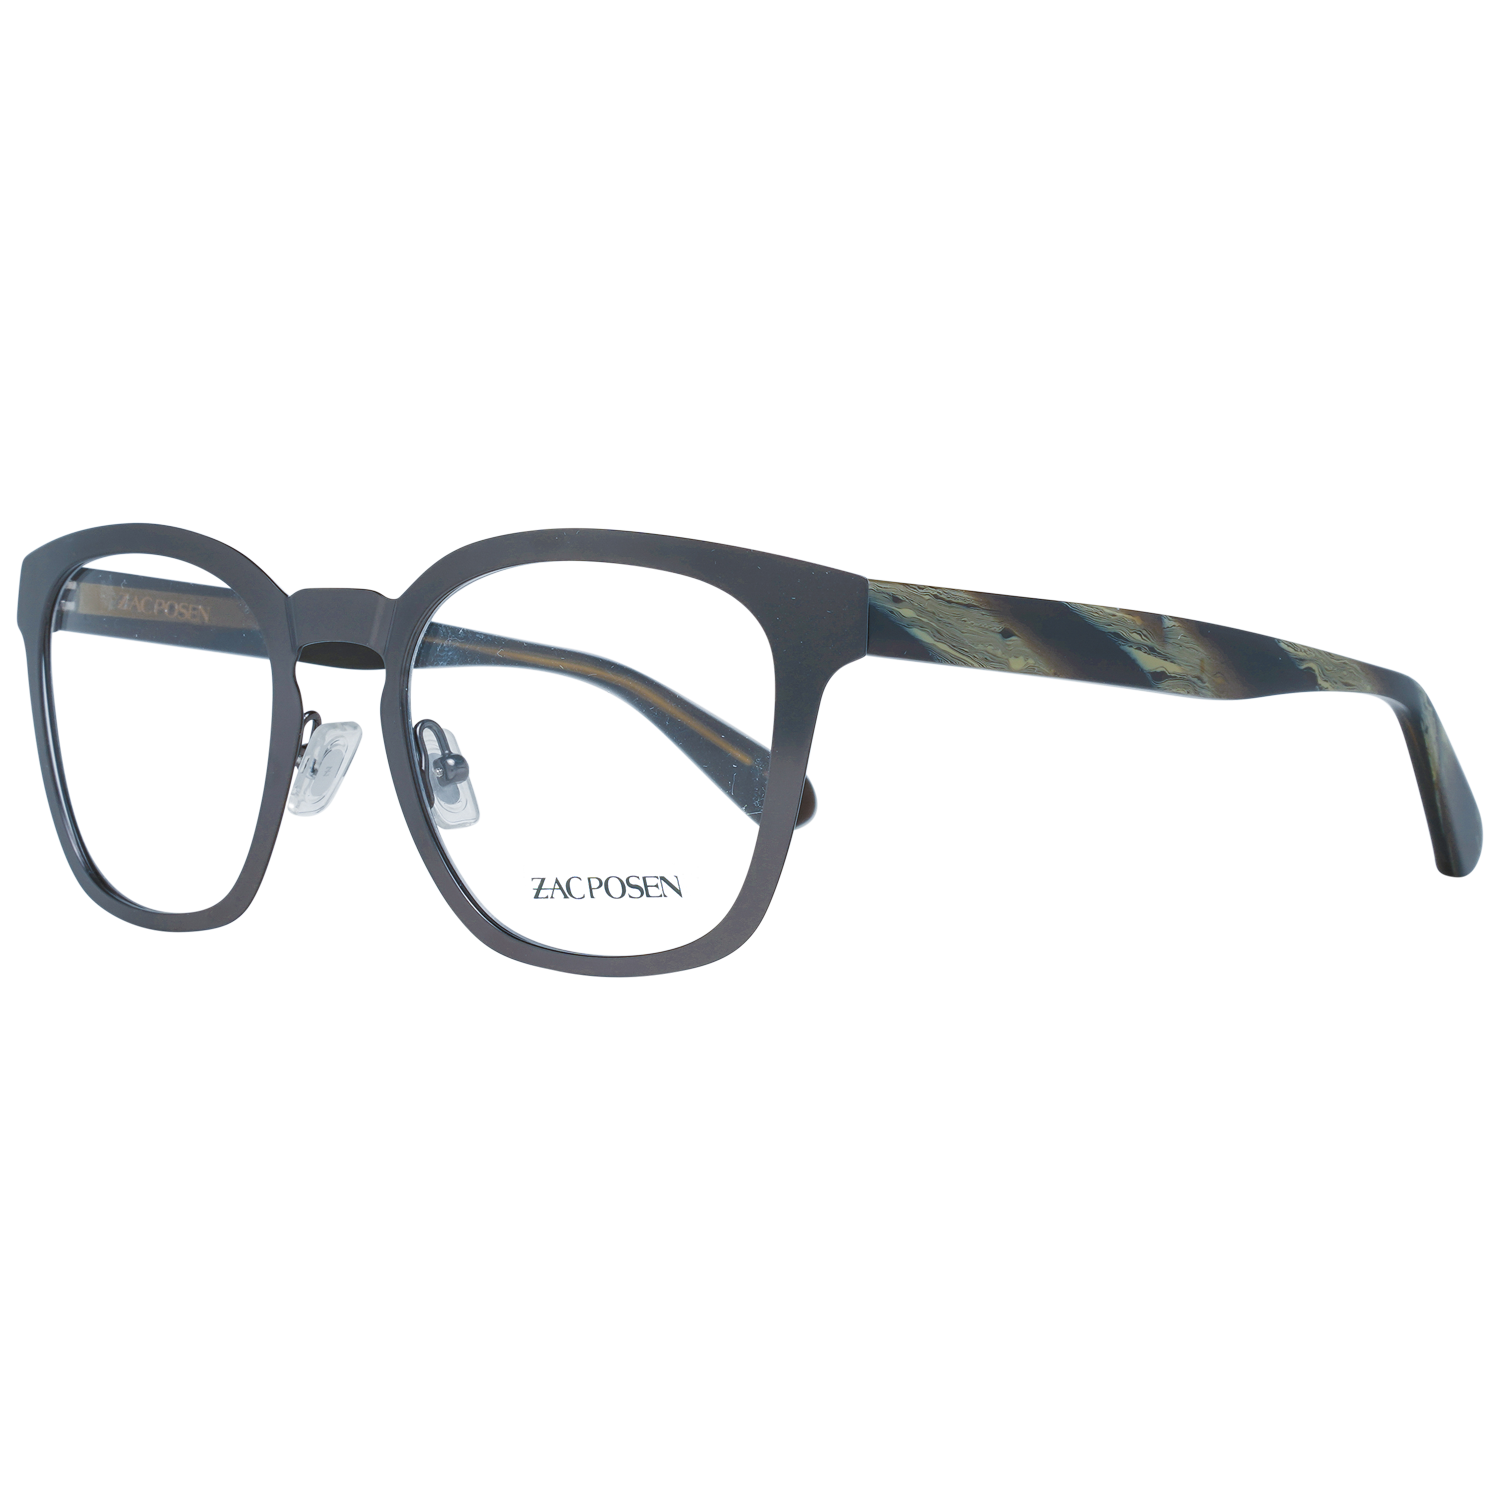 Zac Posen Frames Zac Posen Optical Frame ZTOM GM 49 Tommaso Eyeglasses Eyewear UK USA Australia 